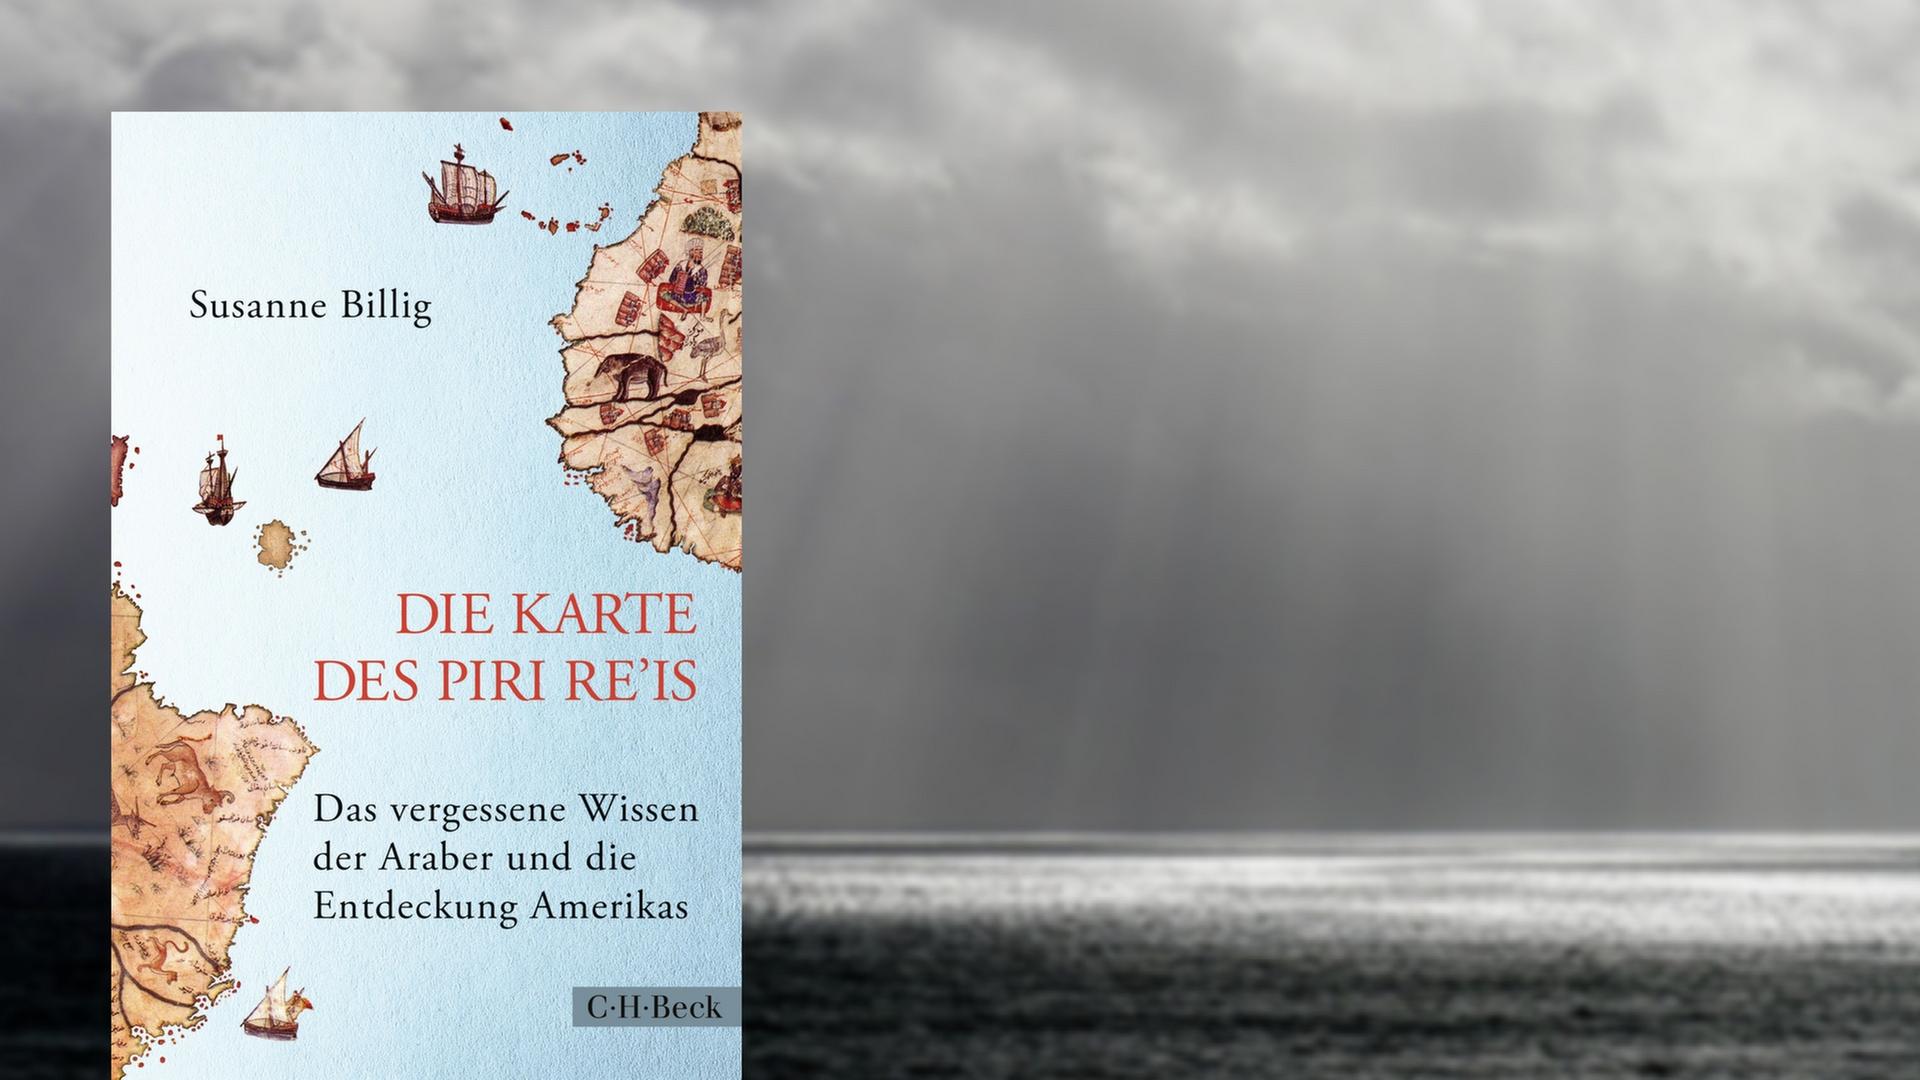 Buchcover "Die Karte des Piri Re'is" von Susanne Billig, im Hintergrund Wolken über dem Atlantik